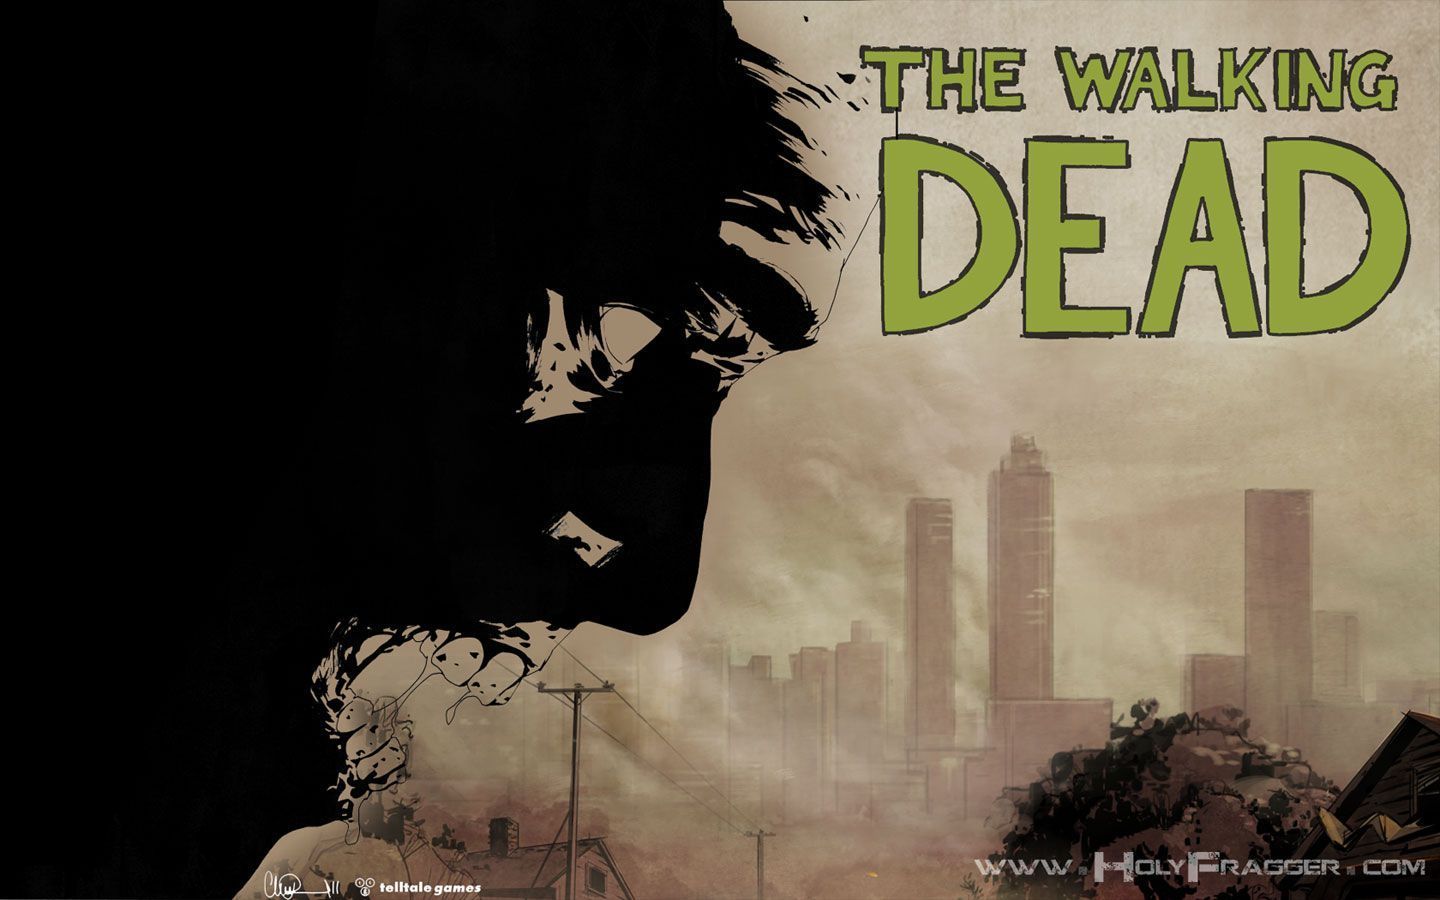 The Walking Dead Video Game Wallpaper 1 - The Walking Dead ...